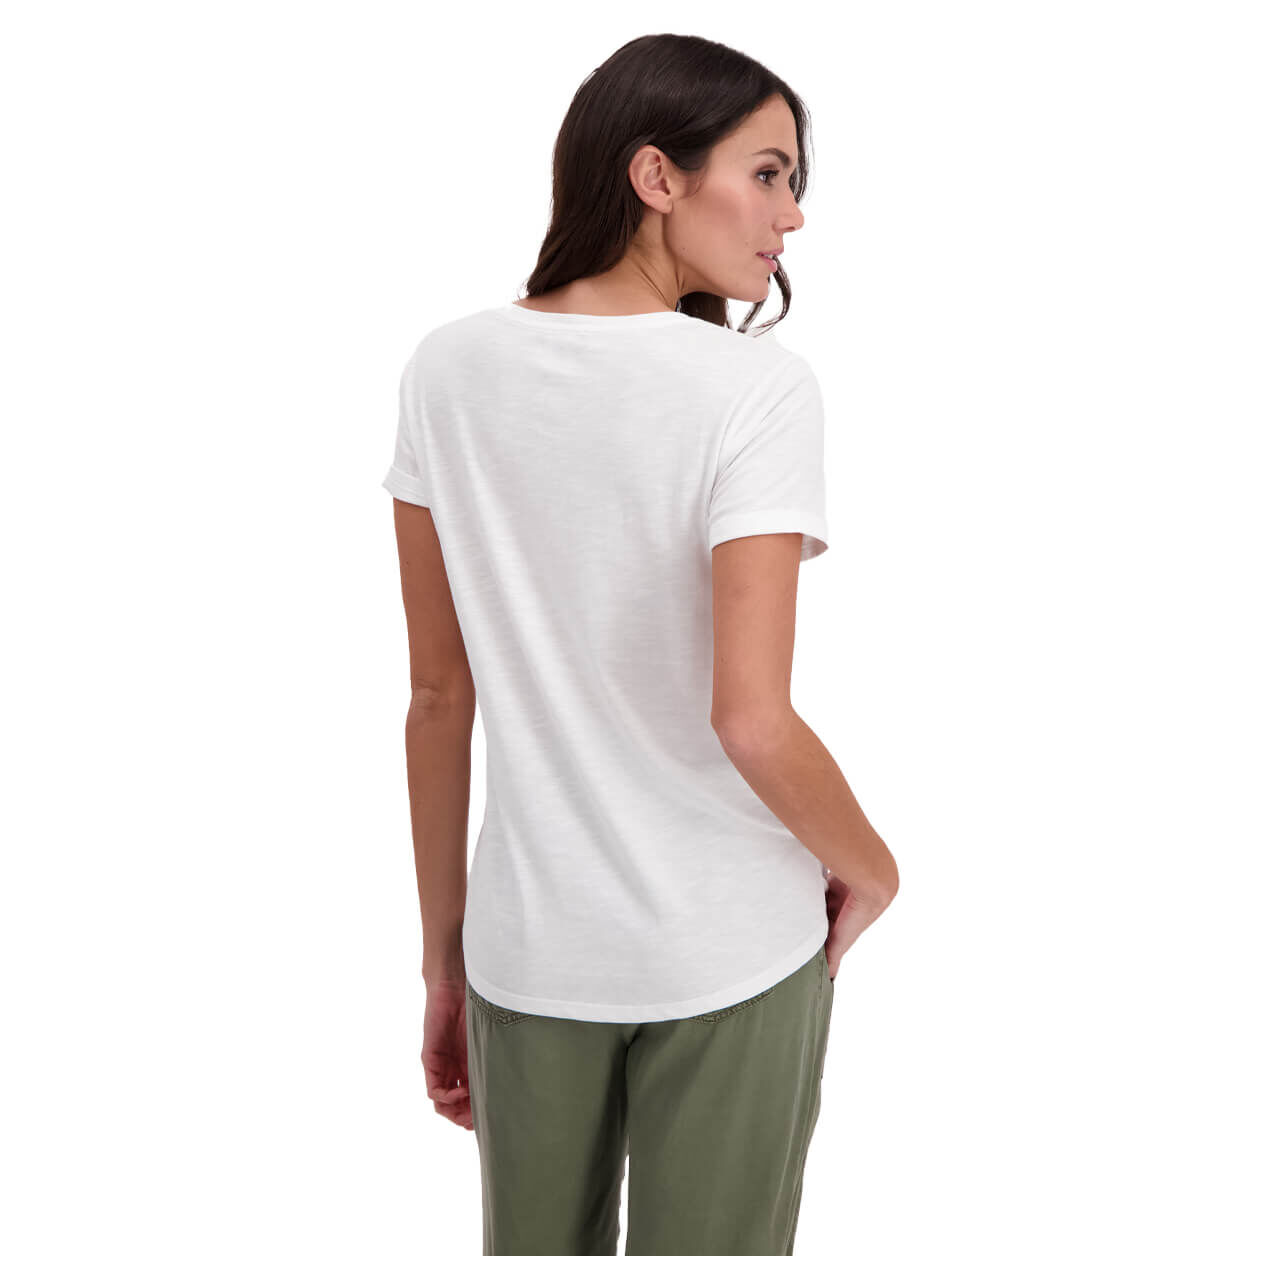 Monari T-Shirt für Damen in Weiß mit Print, FarbNr.: 100